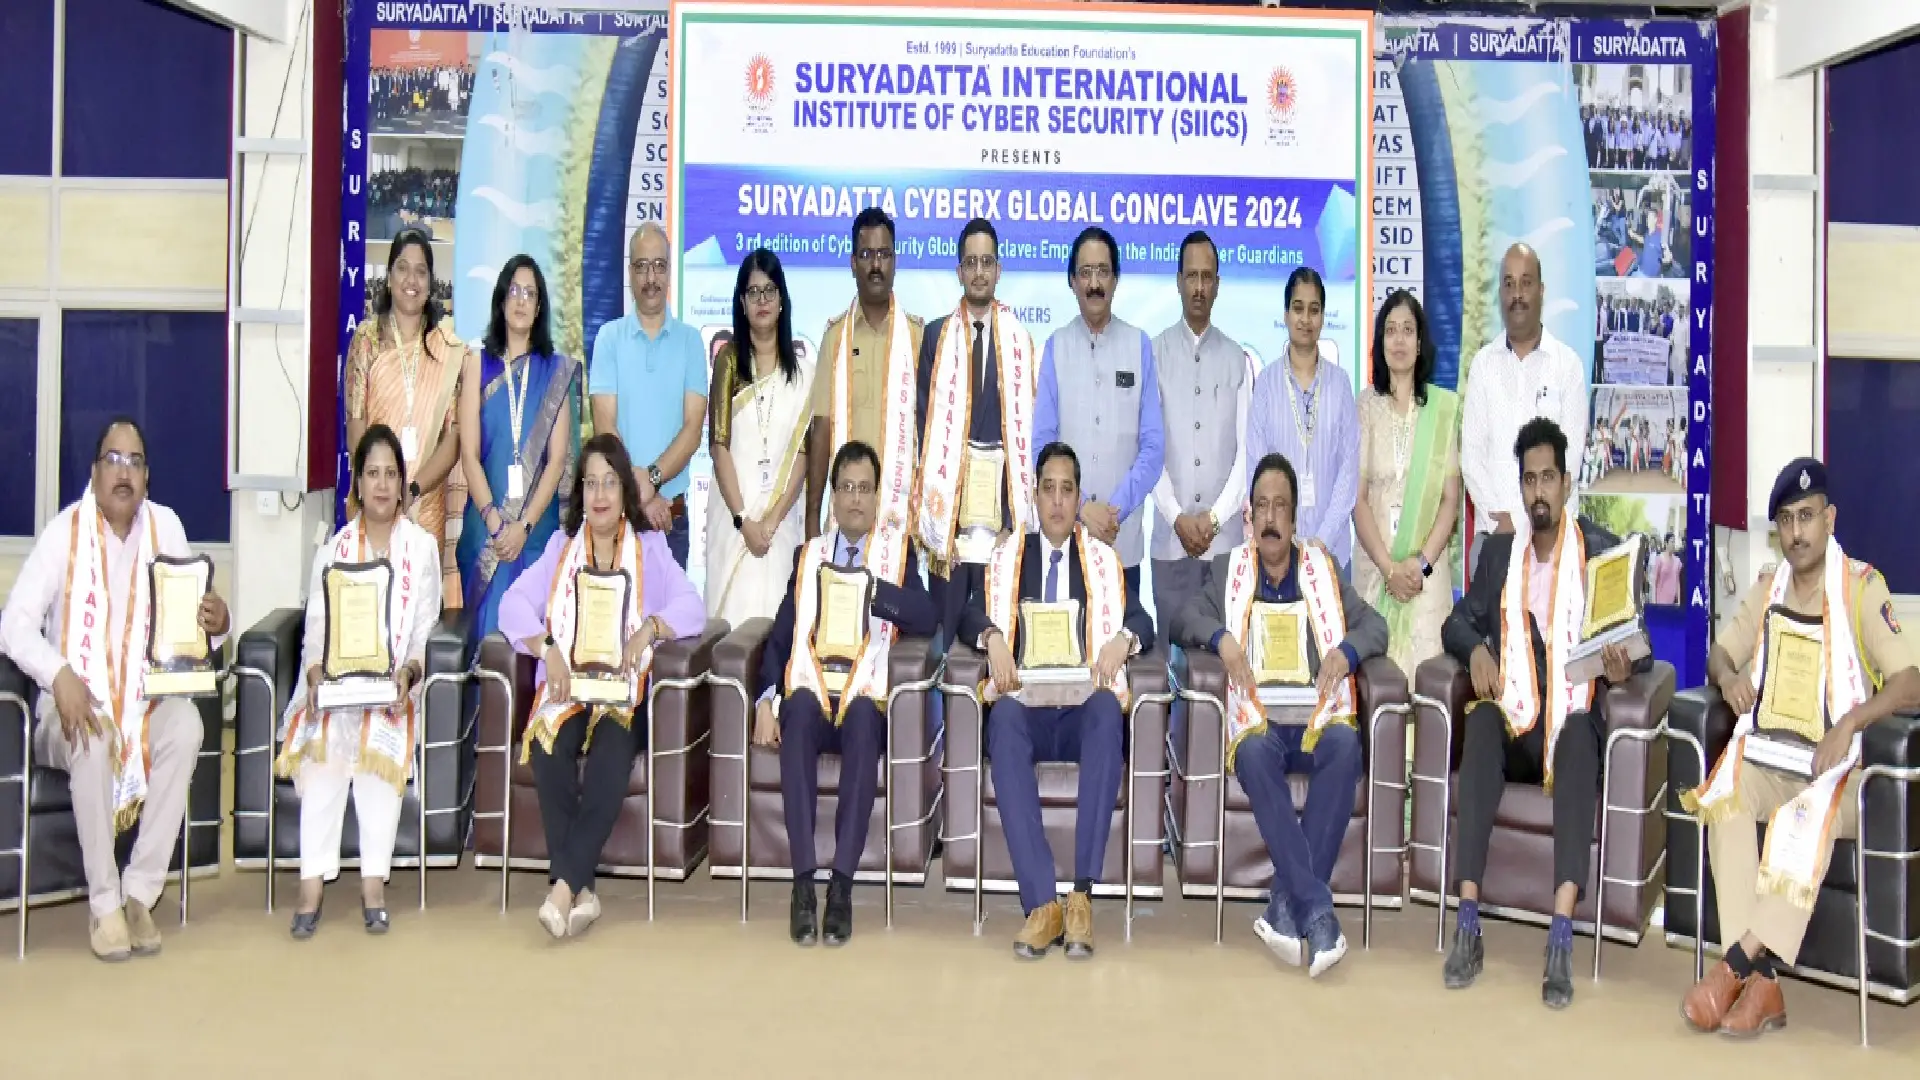 Suryadatta International Institute